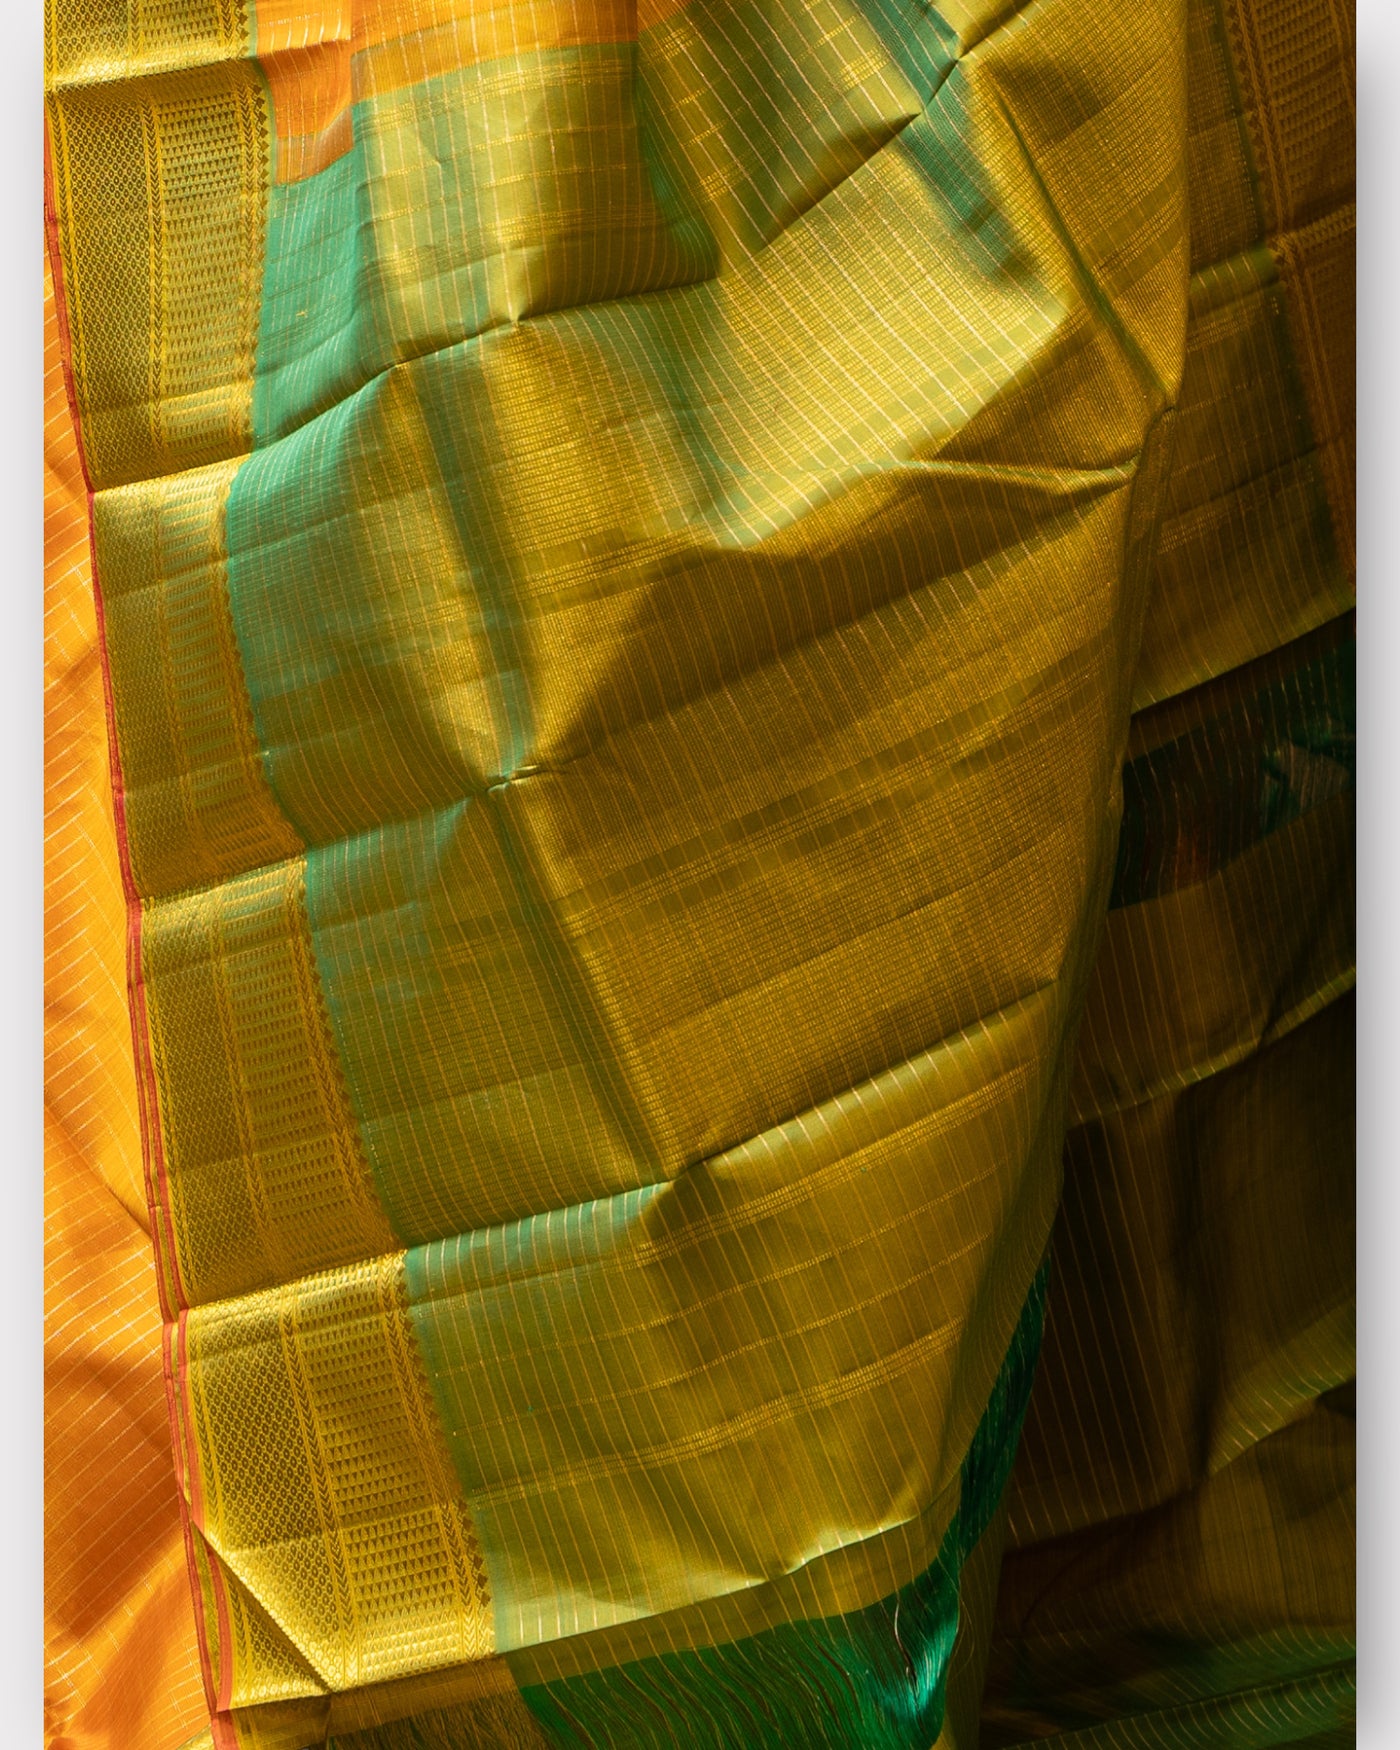 Mambalam Yellow and Green Vairaoosi Checks Pure Kanchipuram Silk Sari - Clio Silks